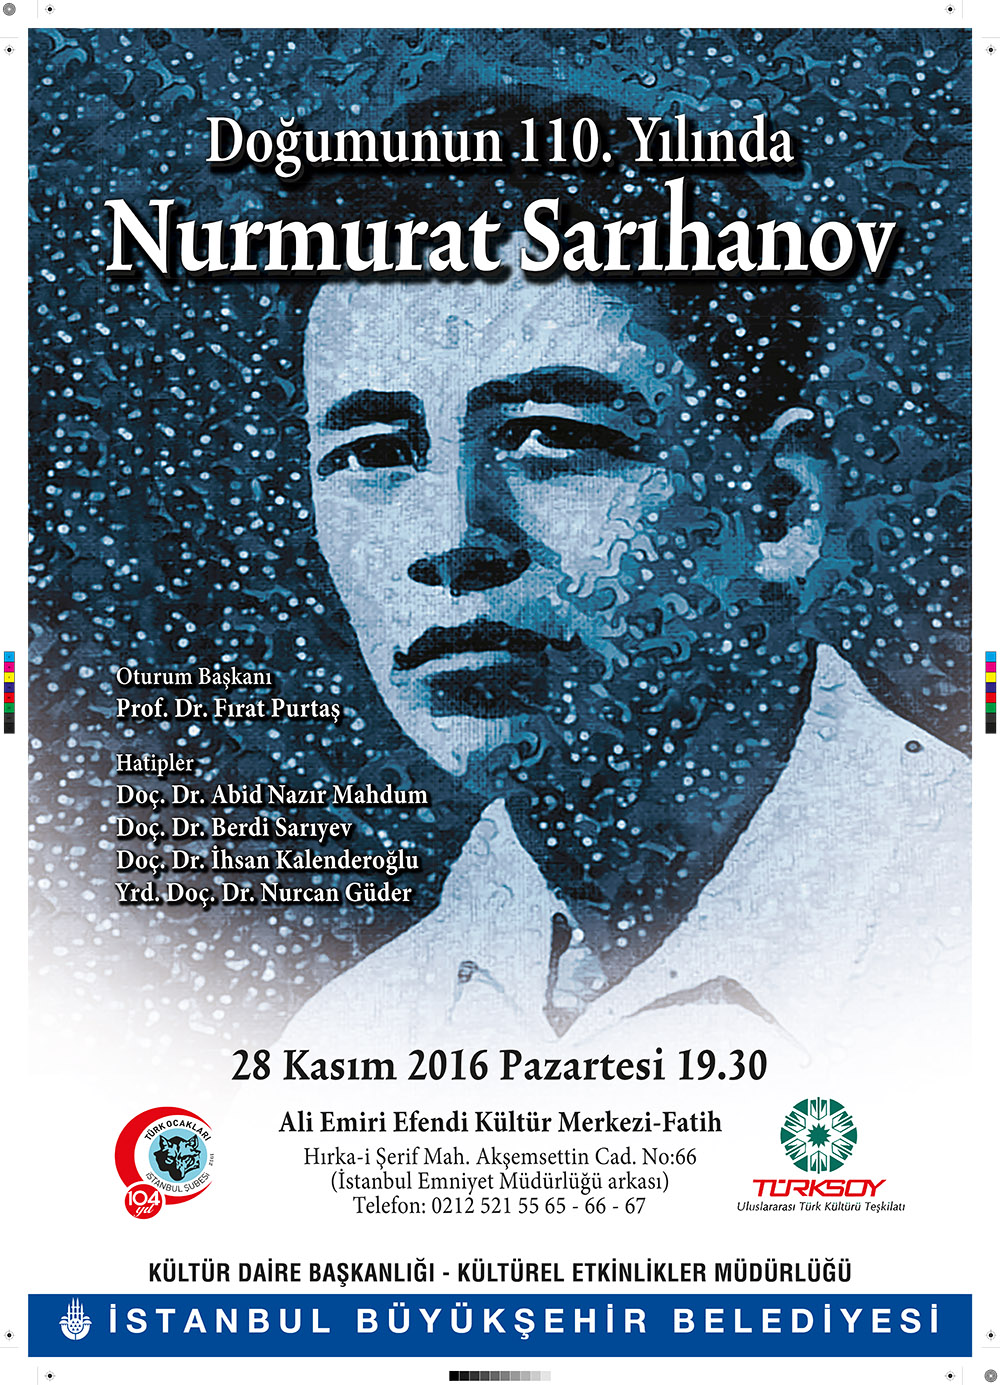 Doğumunun 110. Yılında Nurmırat Sarıhanov